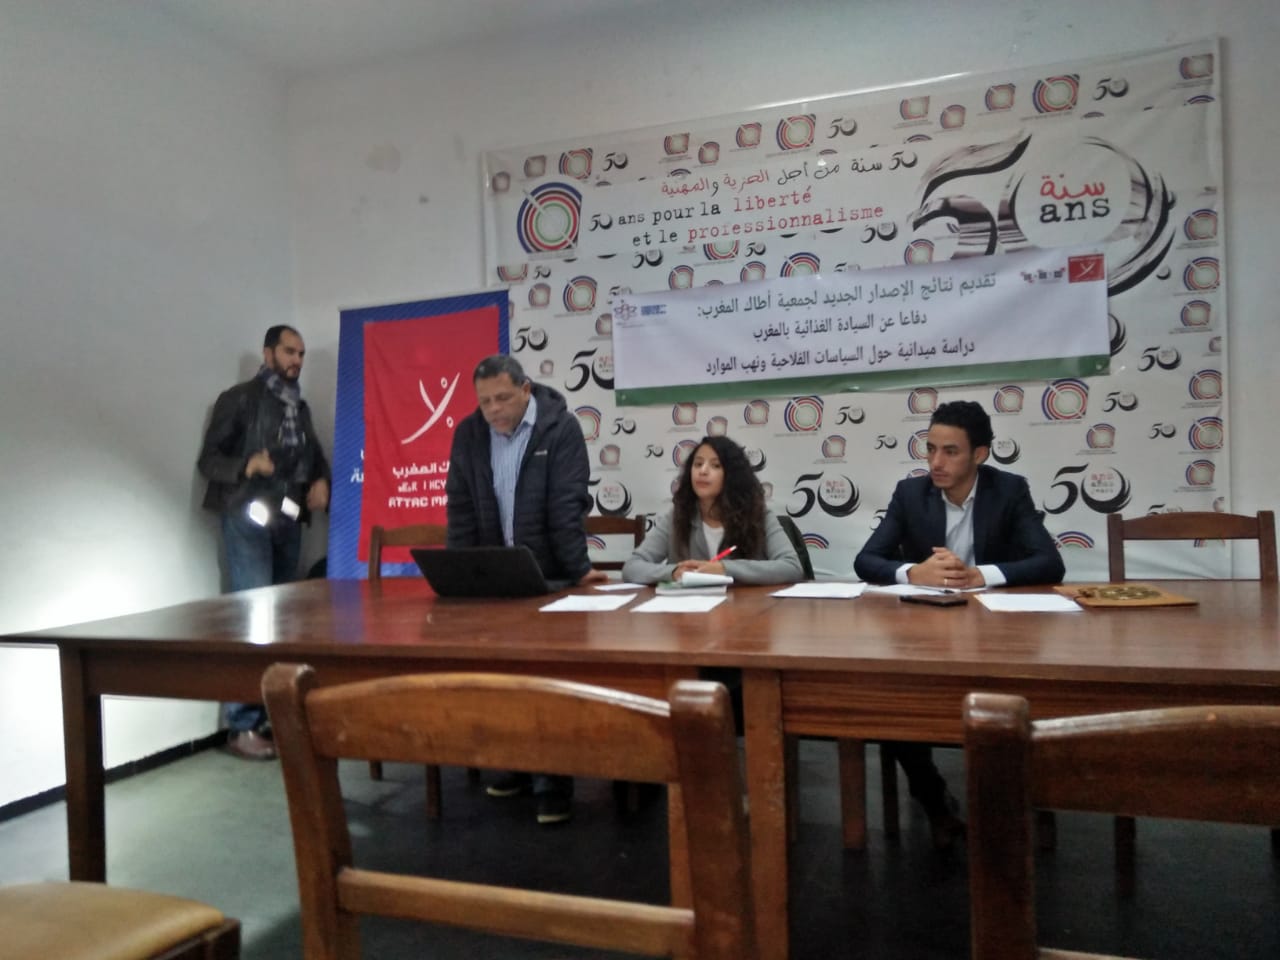 جمعية أطاك المغرب  تنظم لقاء وطنيا لتقديم نتائج دراستها الجديدة حول السيادة الغذائية بالمغرب